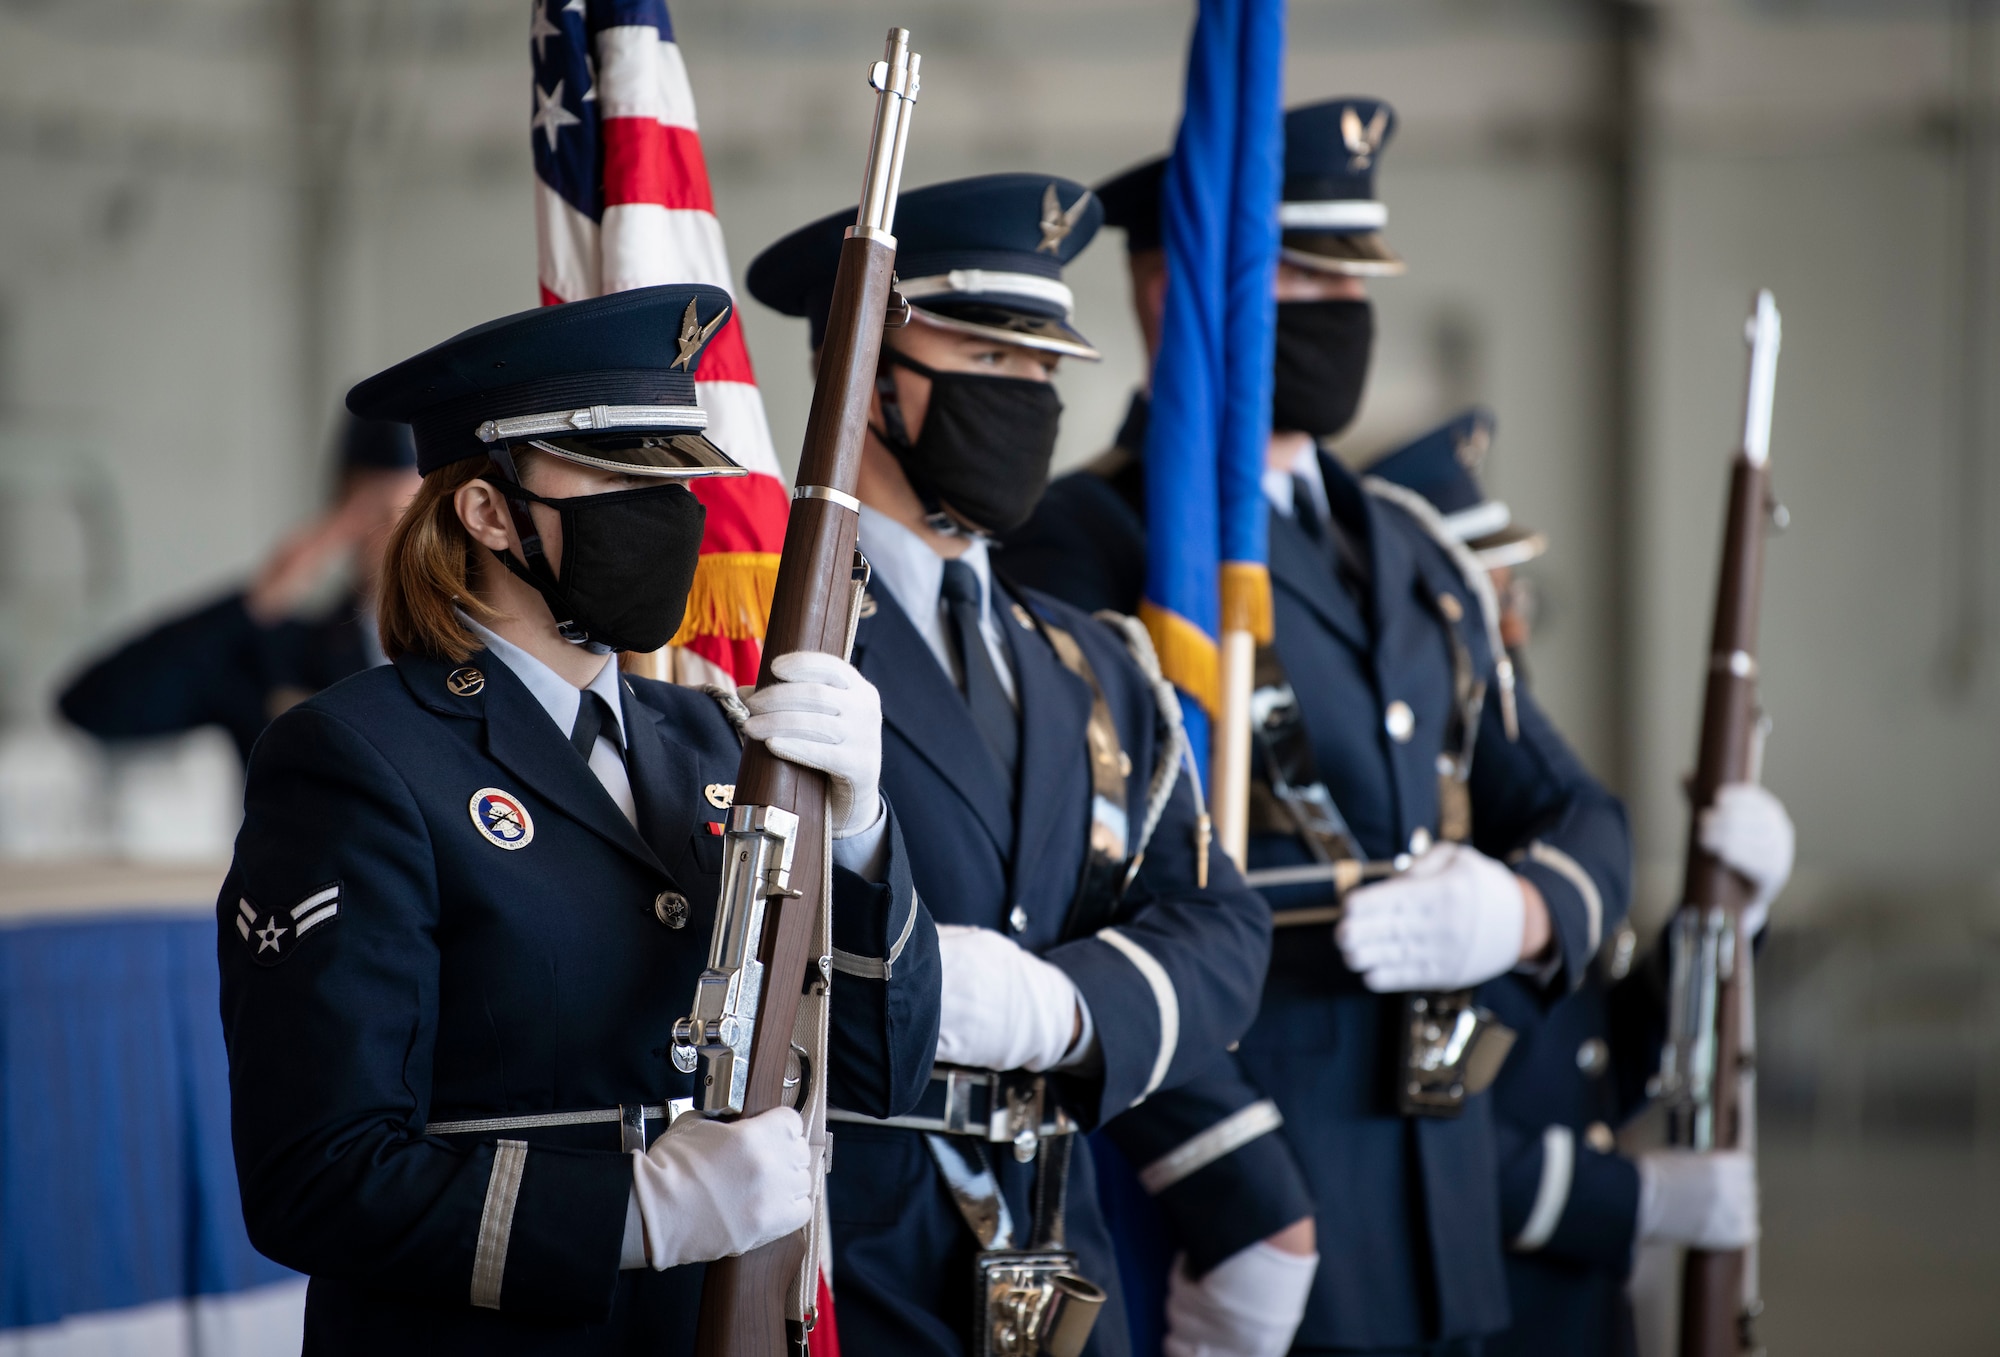 Hurlburt Field Honor Guard ceremonial guardsmen present the colors during a Distinguished Flying Cross presentation ceremony at Hurlburt Field, Florida, Nov. 8, 2021.